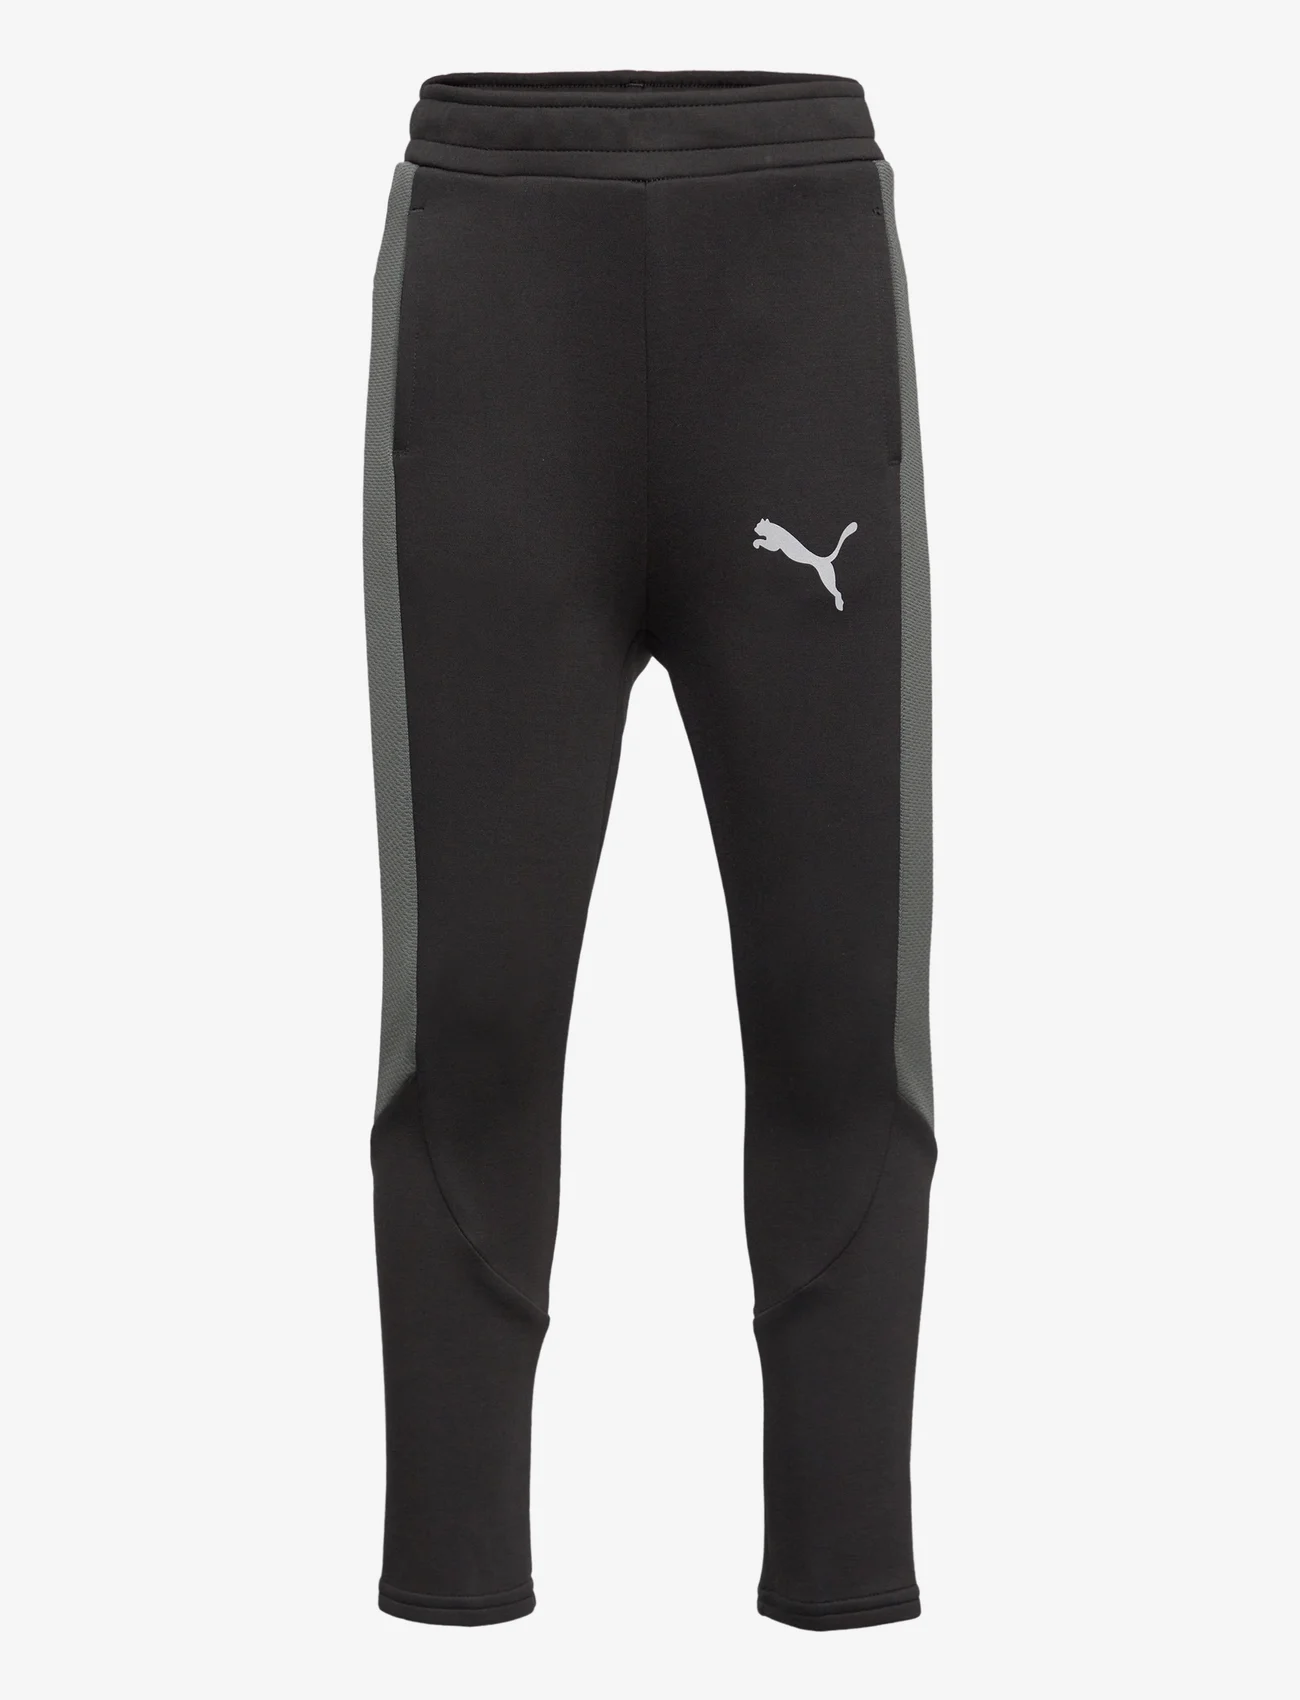 PUMA - EVOSTRIPE Pants DK B - sports bottoms - puma black - 0